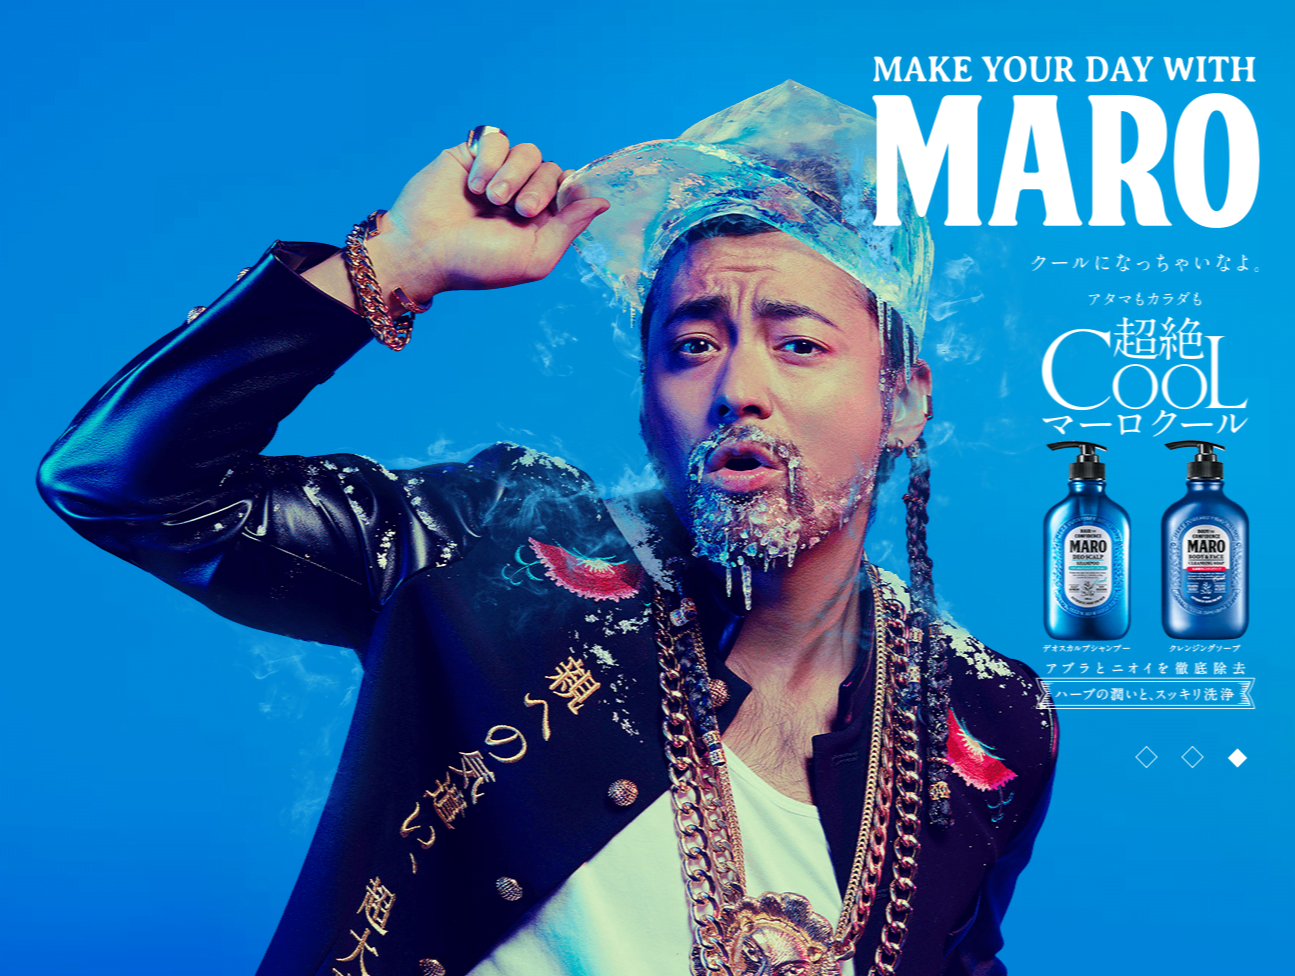 # 東西混合的新黑人造型模樣：山田孝之出演男性清潔保養品牌MARO新一季形象廣告 17